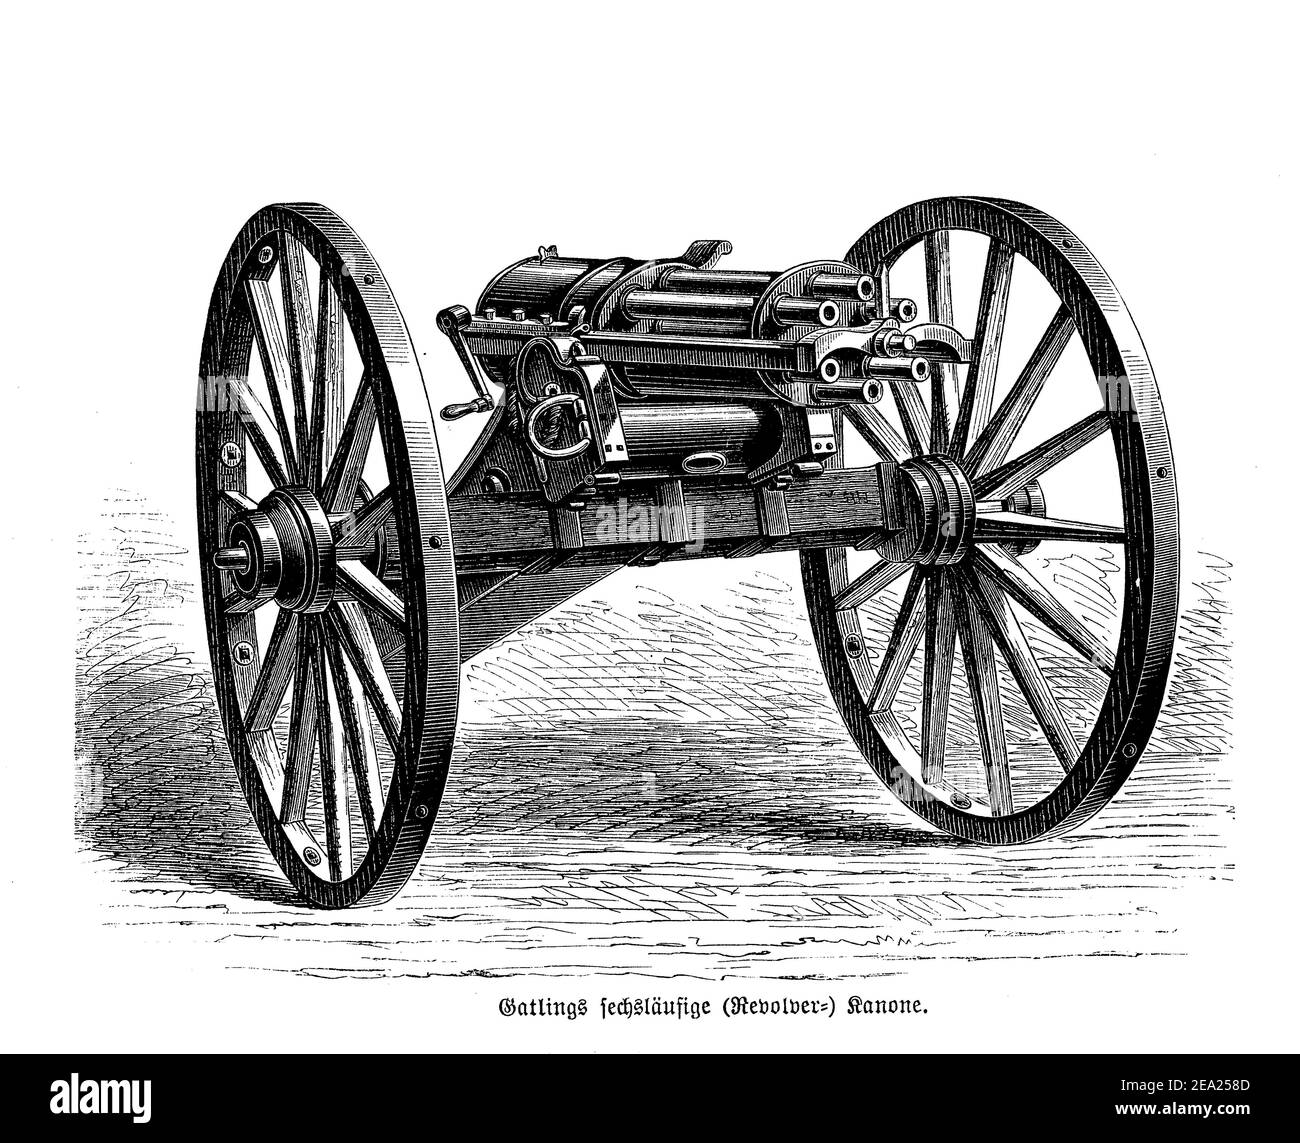 La pistola a macchina a cilindro multiplo Gatling a fuoco rapido inventata nel 1861 da Richard Jordan Gatling, ogni canna carica in sequenza un singolo tondo di cartuccia e spara come cannone di rivoluzione Foto Stock